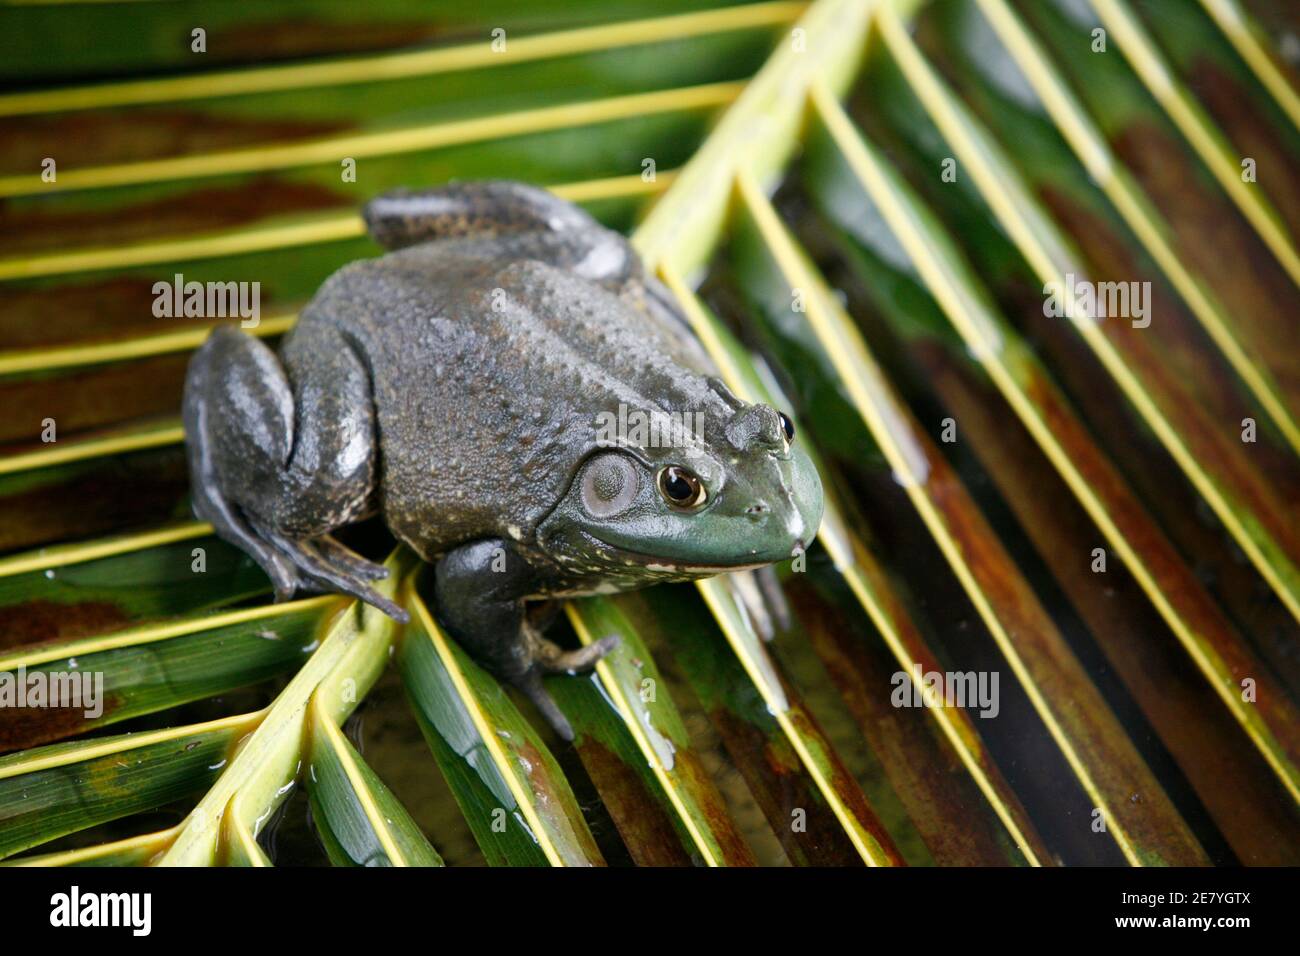 Un American Bullfrog è visto in uno stagno di accoppiamento al Jurong Frog Farm a Singapore 11 dicembre 2008. L'unico allevatore di rane nella città-stato alimenta le rane principalmente per il consumo umano. REUTERS/Tan Choon Huat (SINGAPORE) Foto Stock